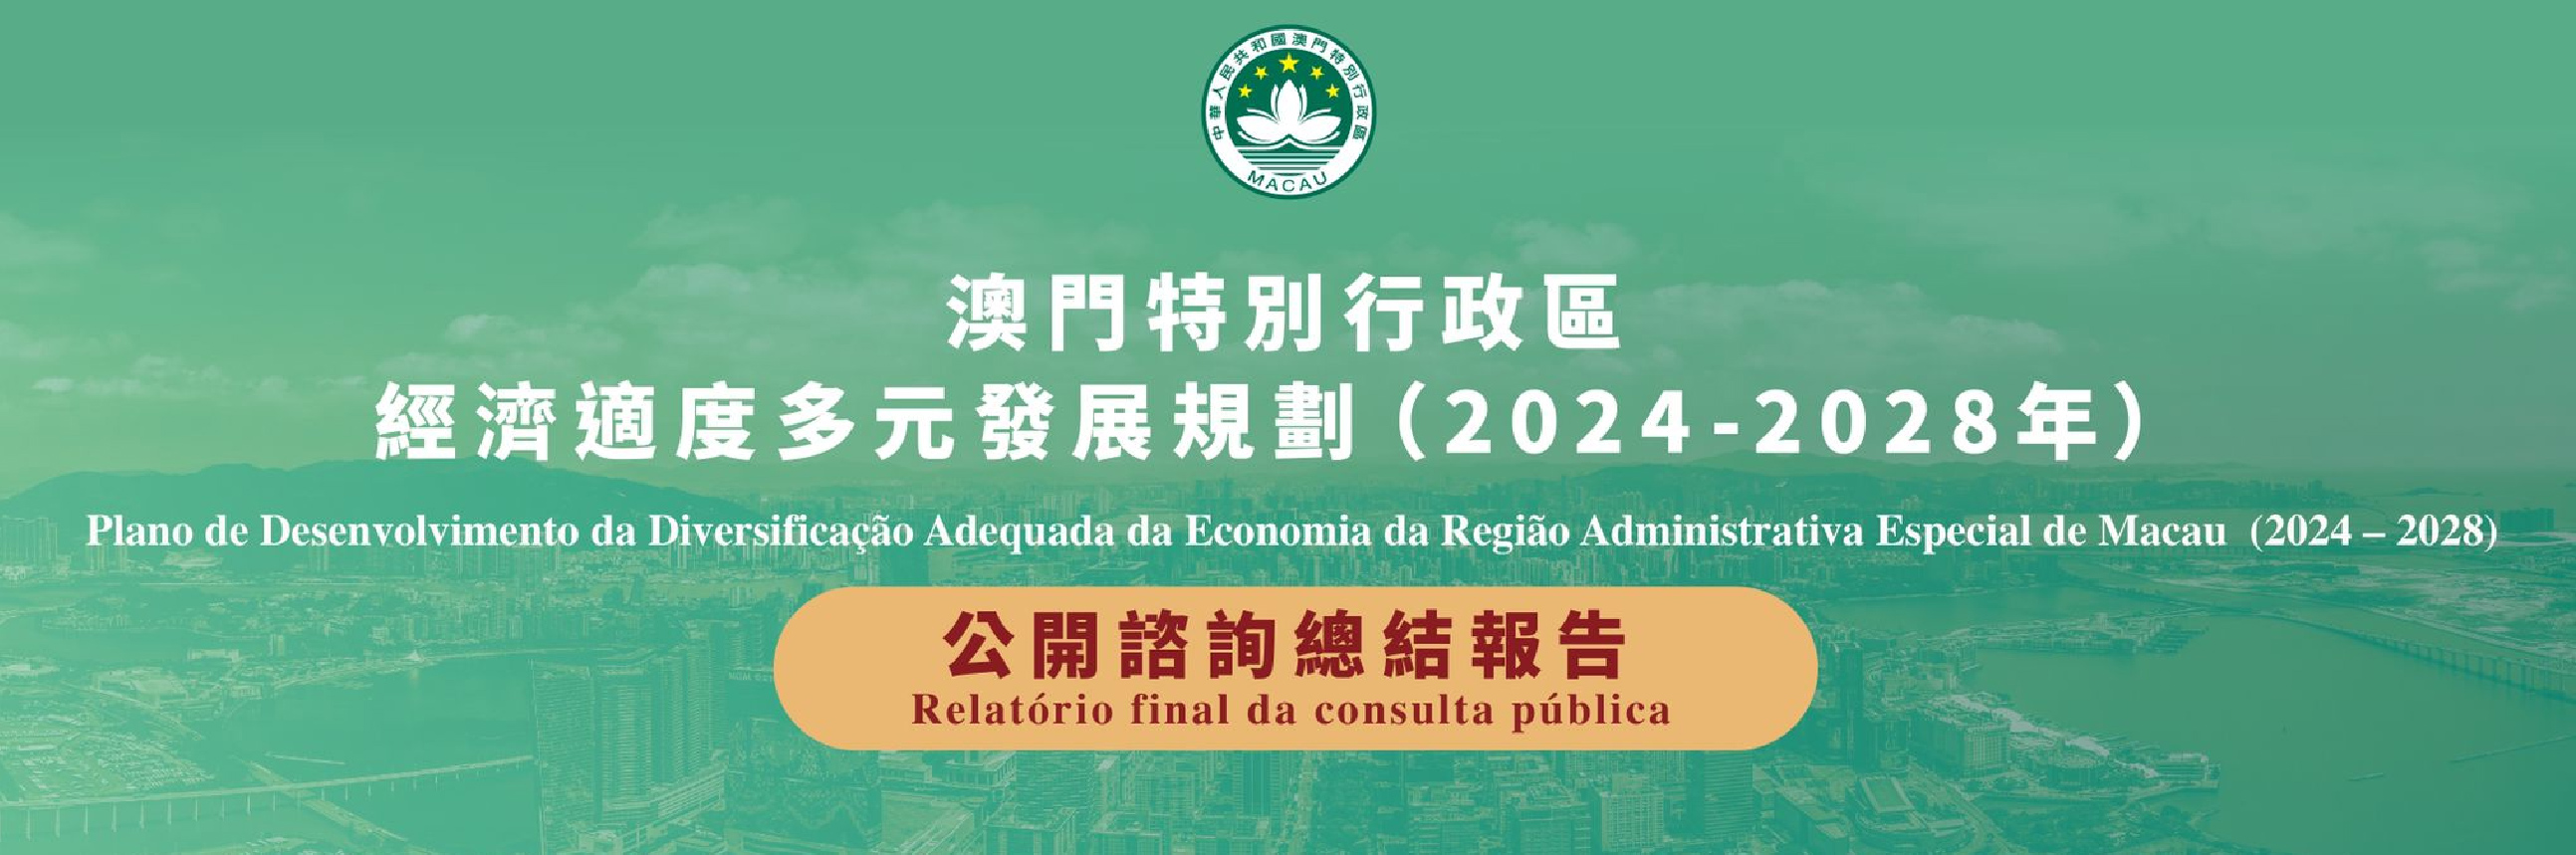 经济适度多元发展规划公开谘询总结报告 (2024 - 2028)